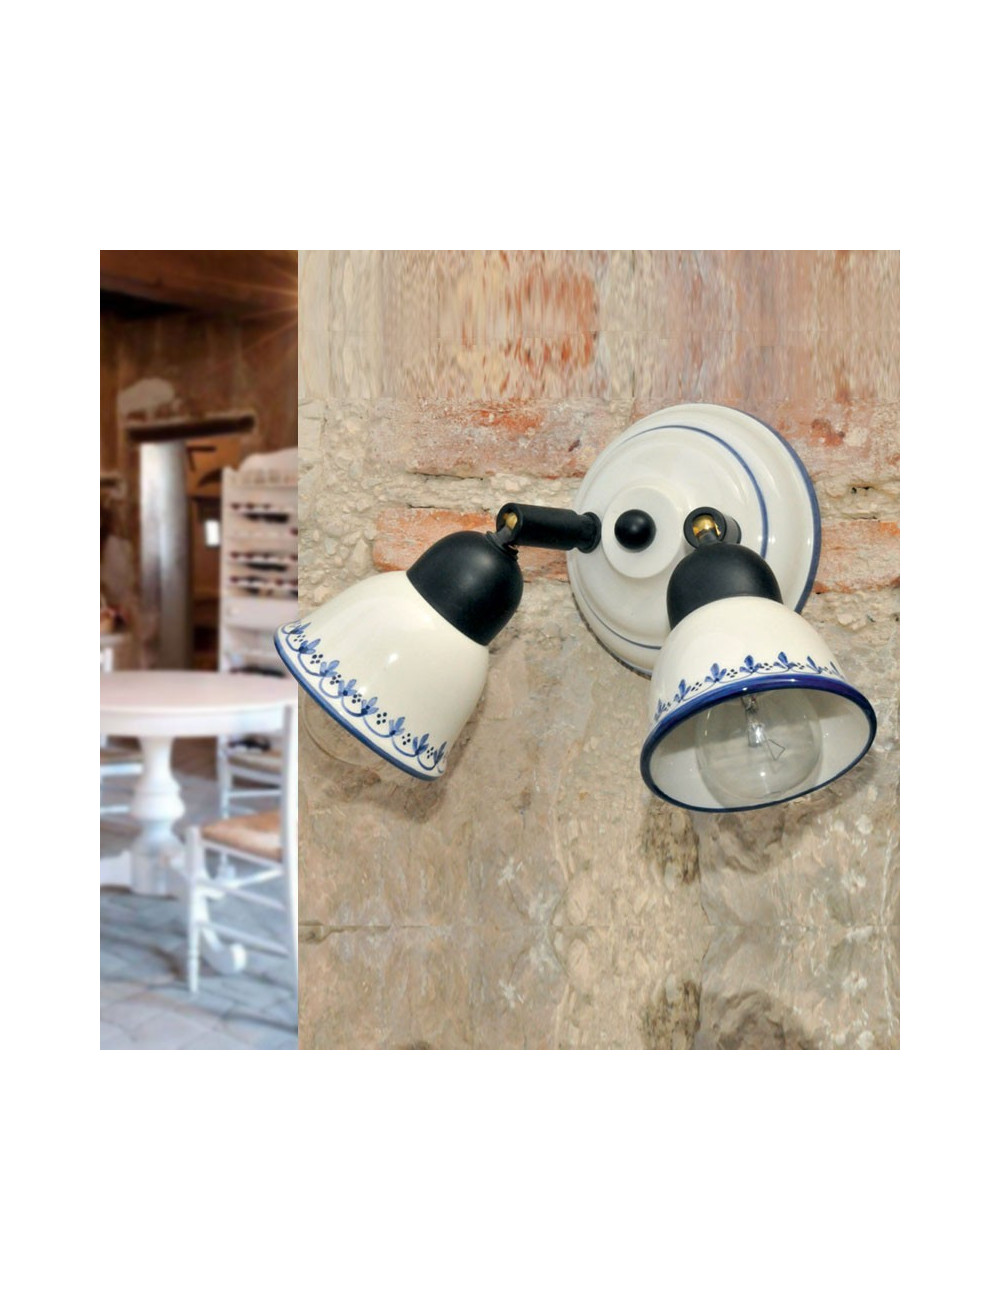 KILA Wand Wand Wand Wand Doppel Spot verstellbare Keramik dekoriert klassischen rustikalen Stil